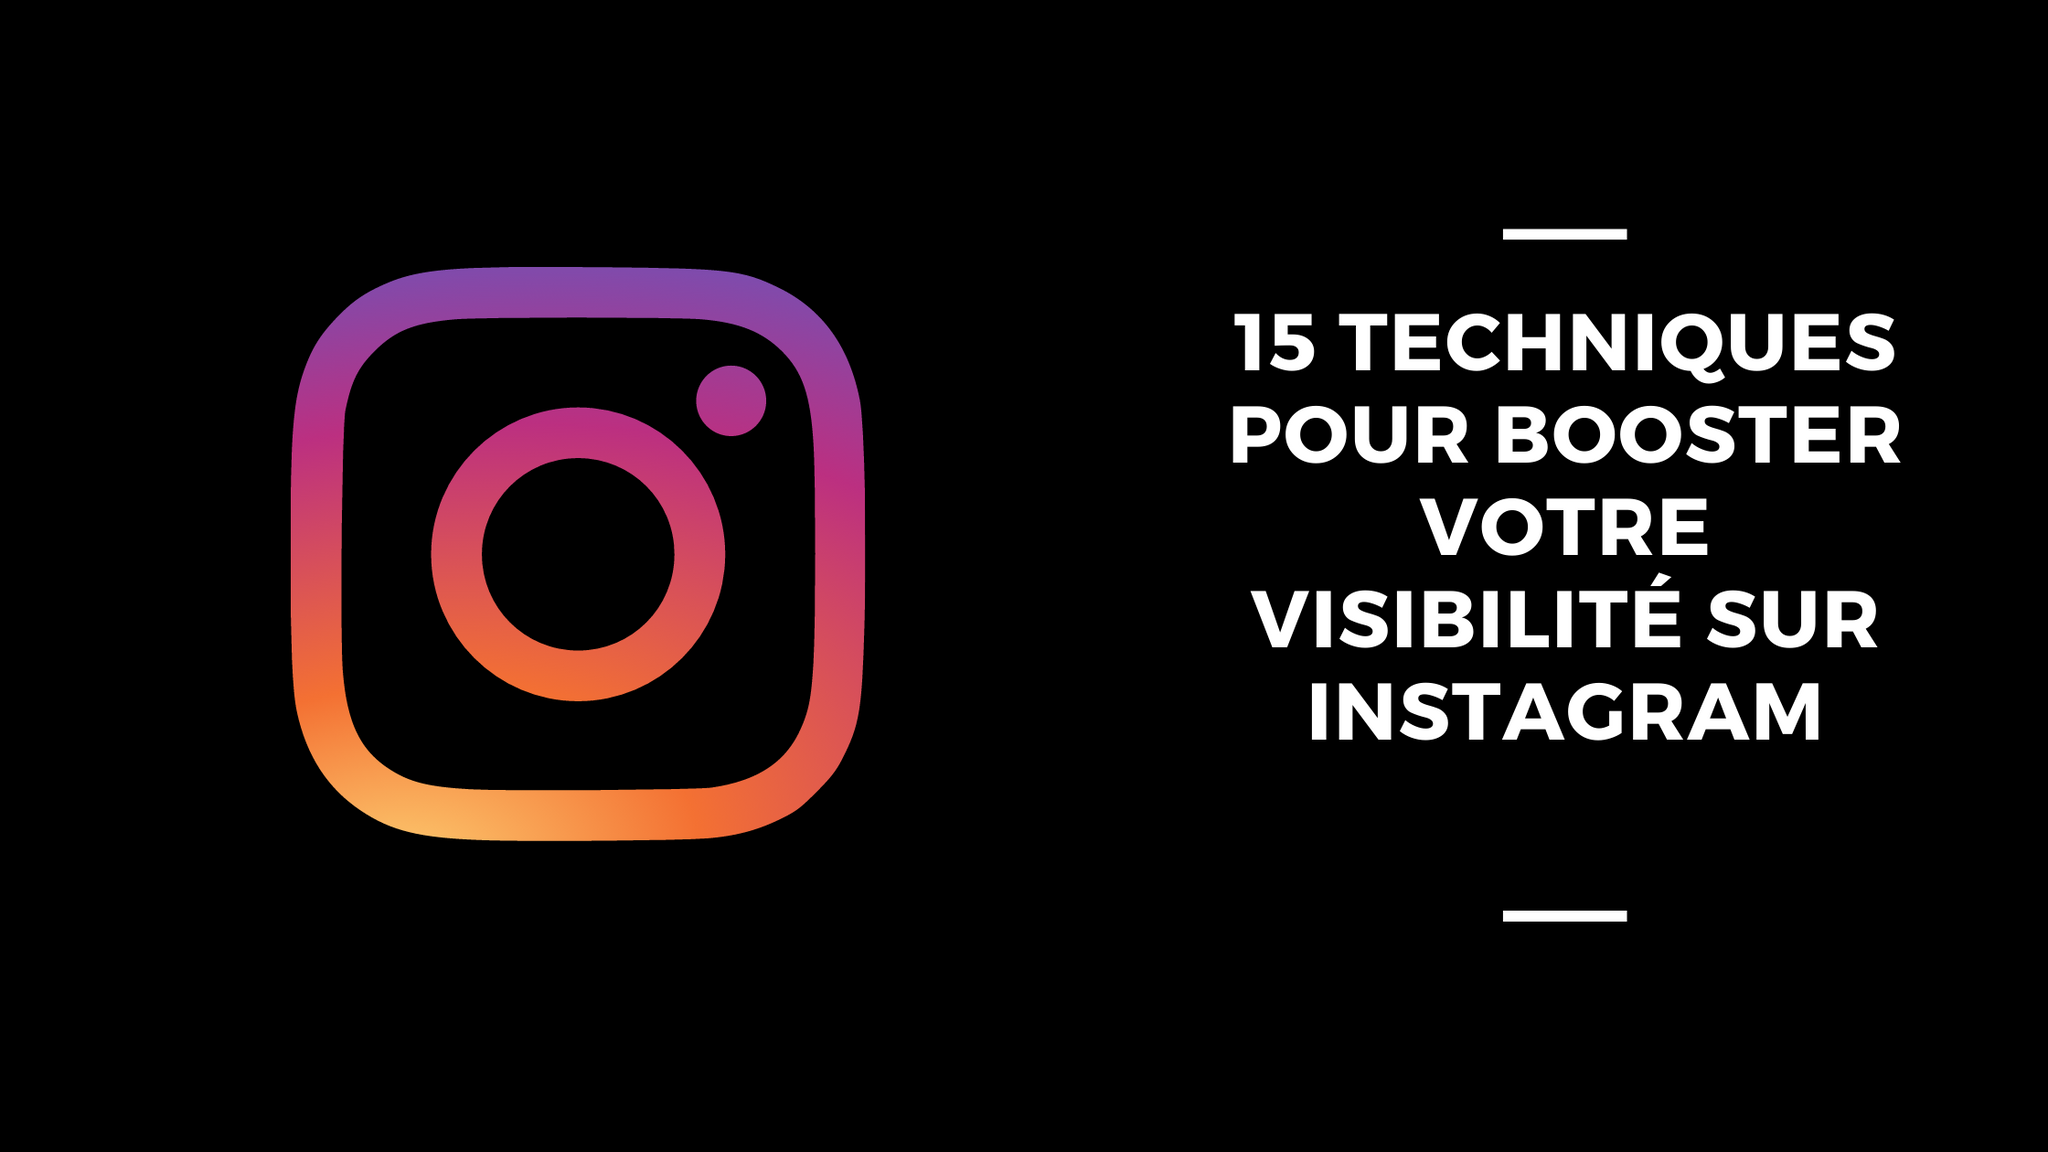 15 Techniques pour Booster votre Visibilité sur Instagram